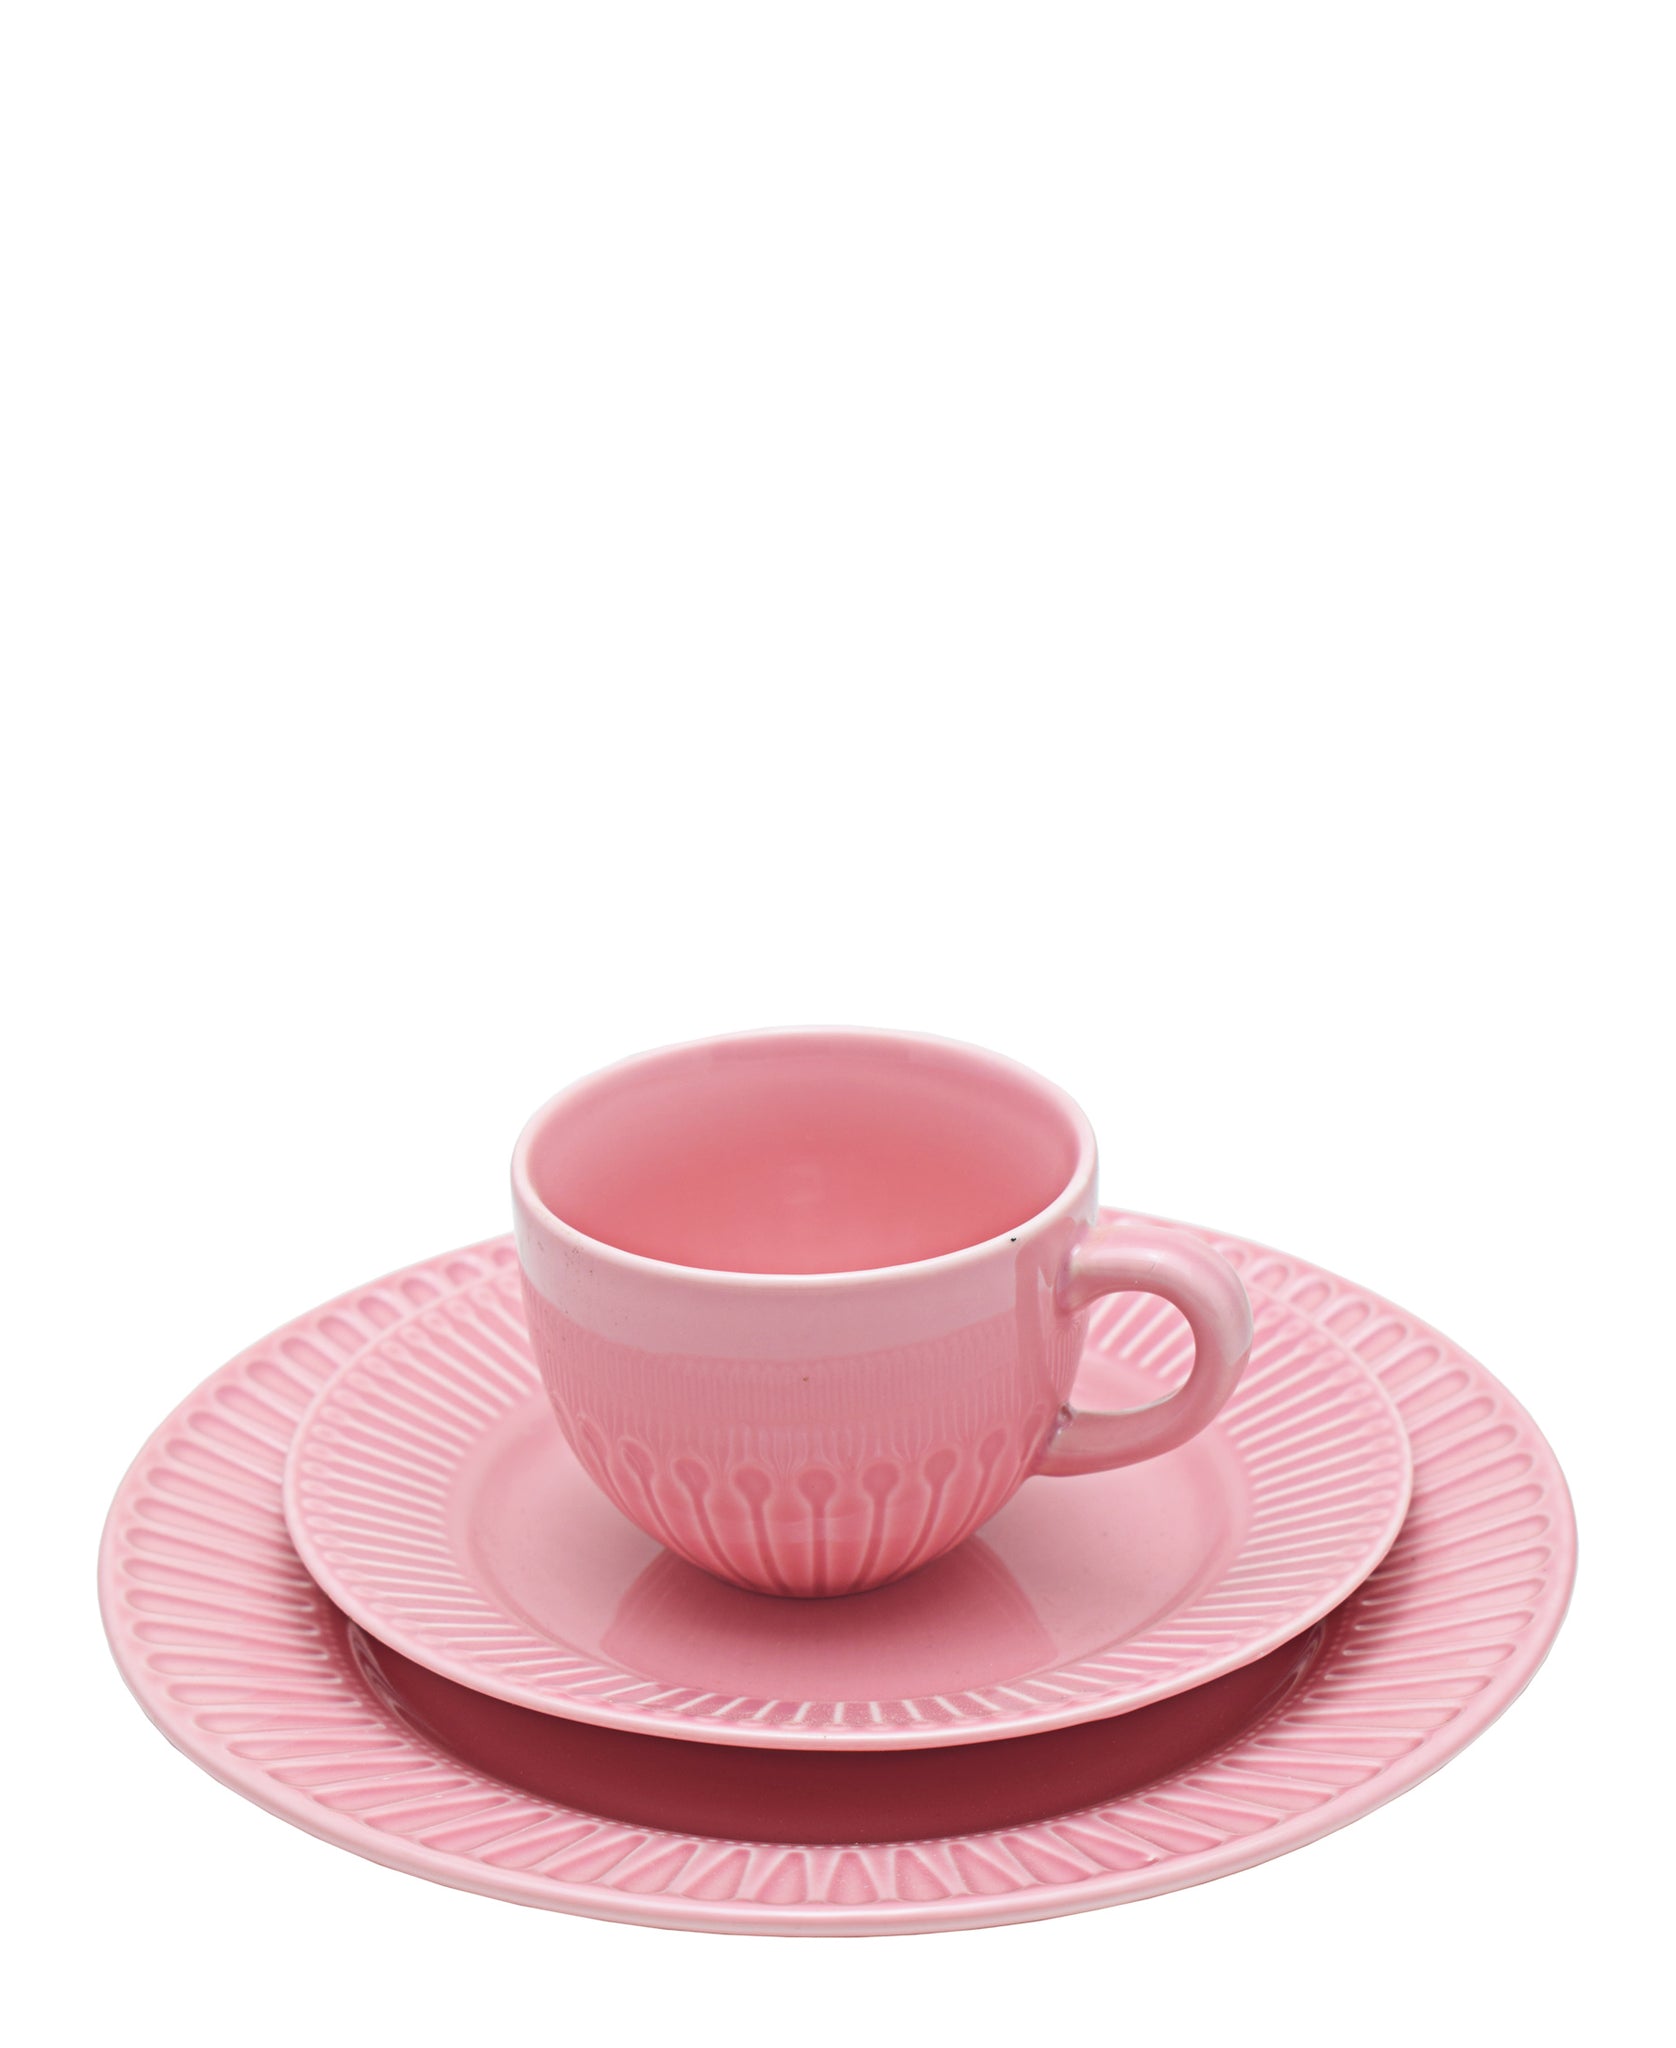 Eetrite Embossed Plate -Pink